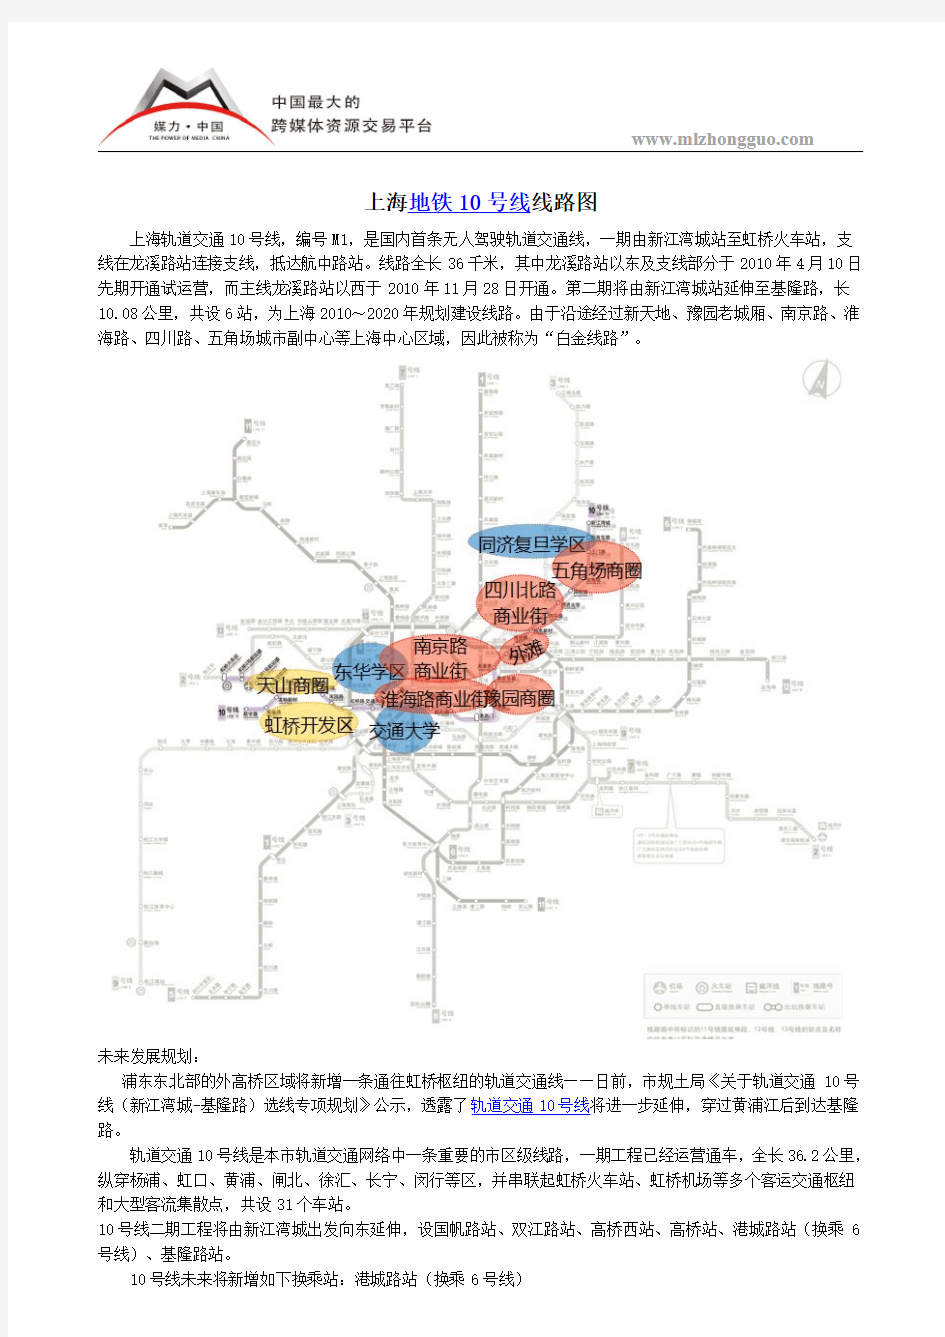 上海地铁10号线线路图